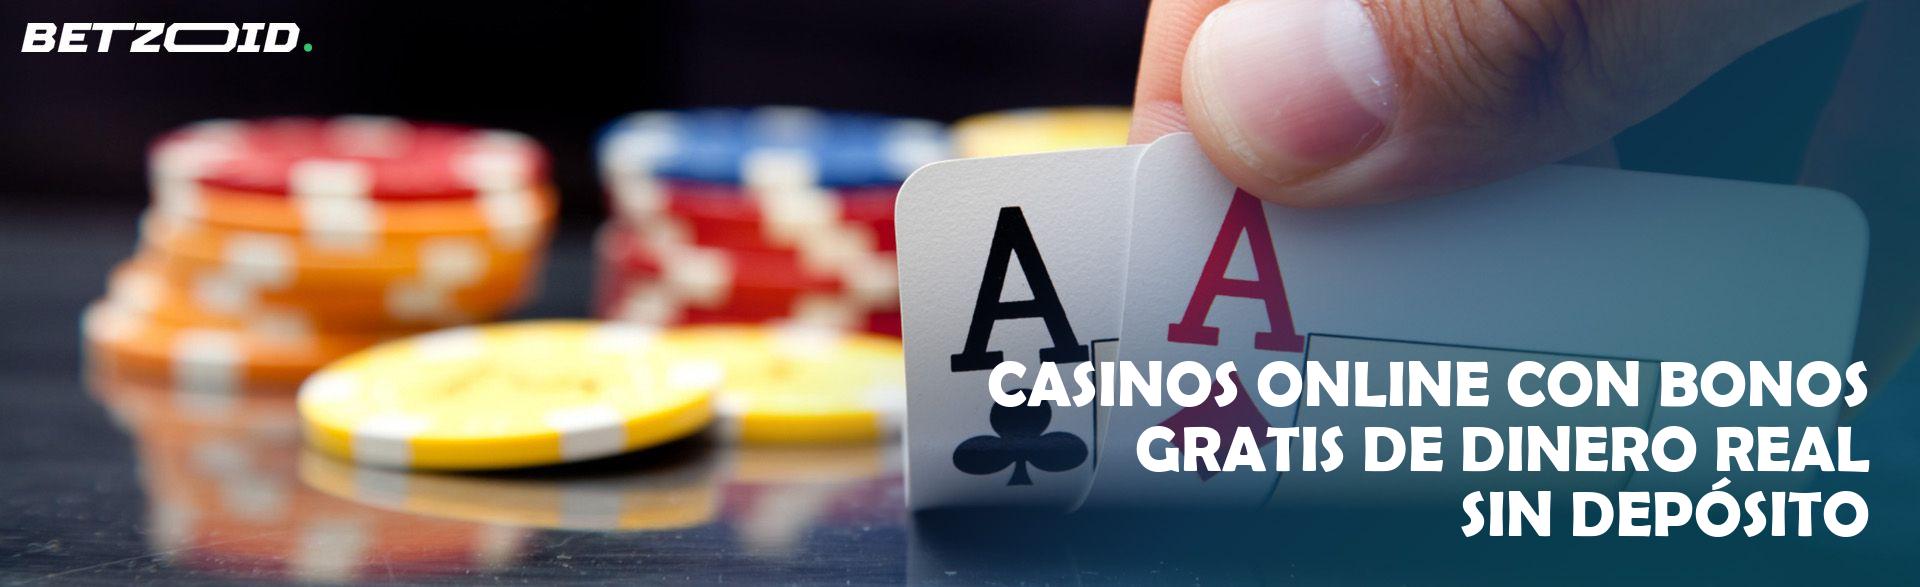 ¿Qué es casinos virtuales y cómo funciona?